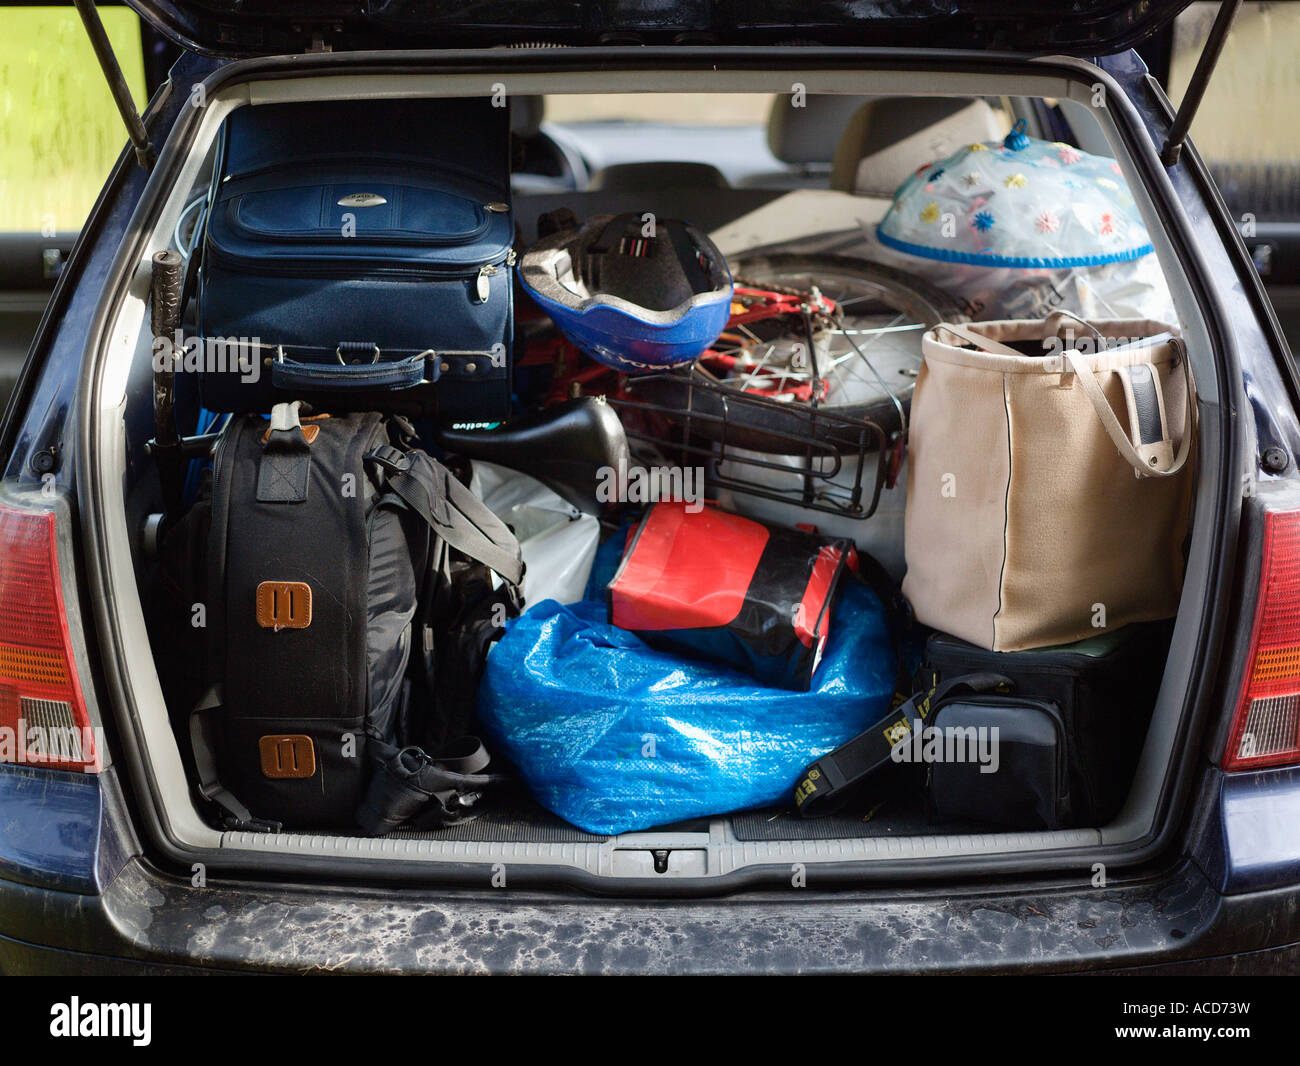 Kisten und Koffer im Kofferraum des Autos, im Freien Stockfotografie - Alamy